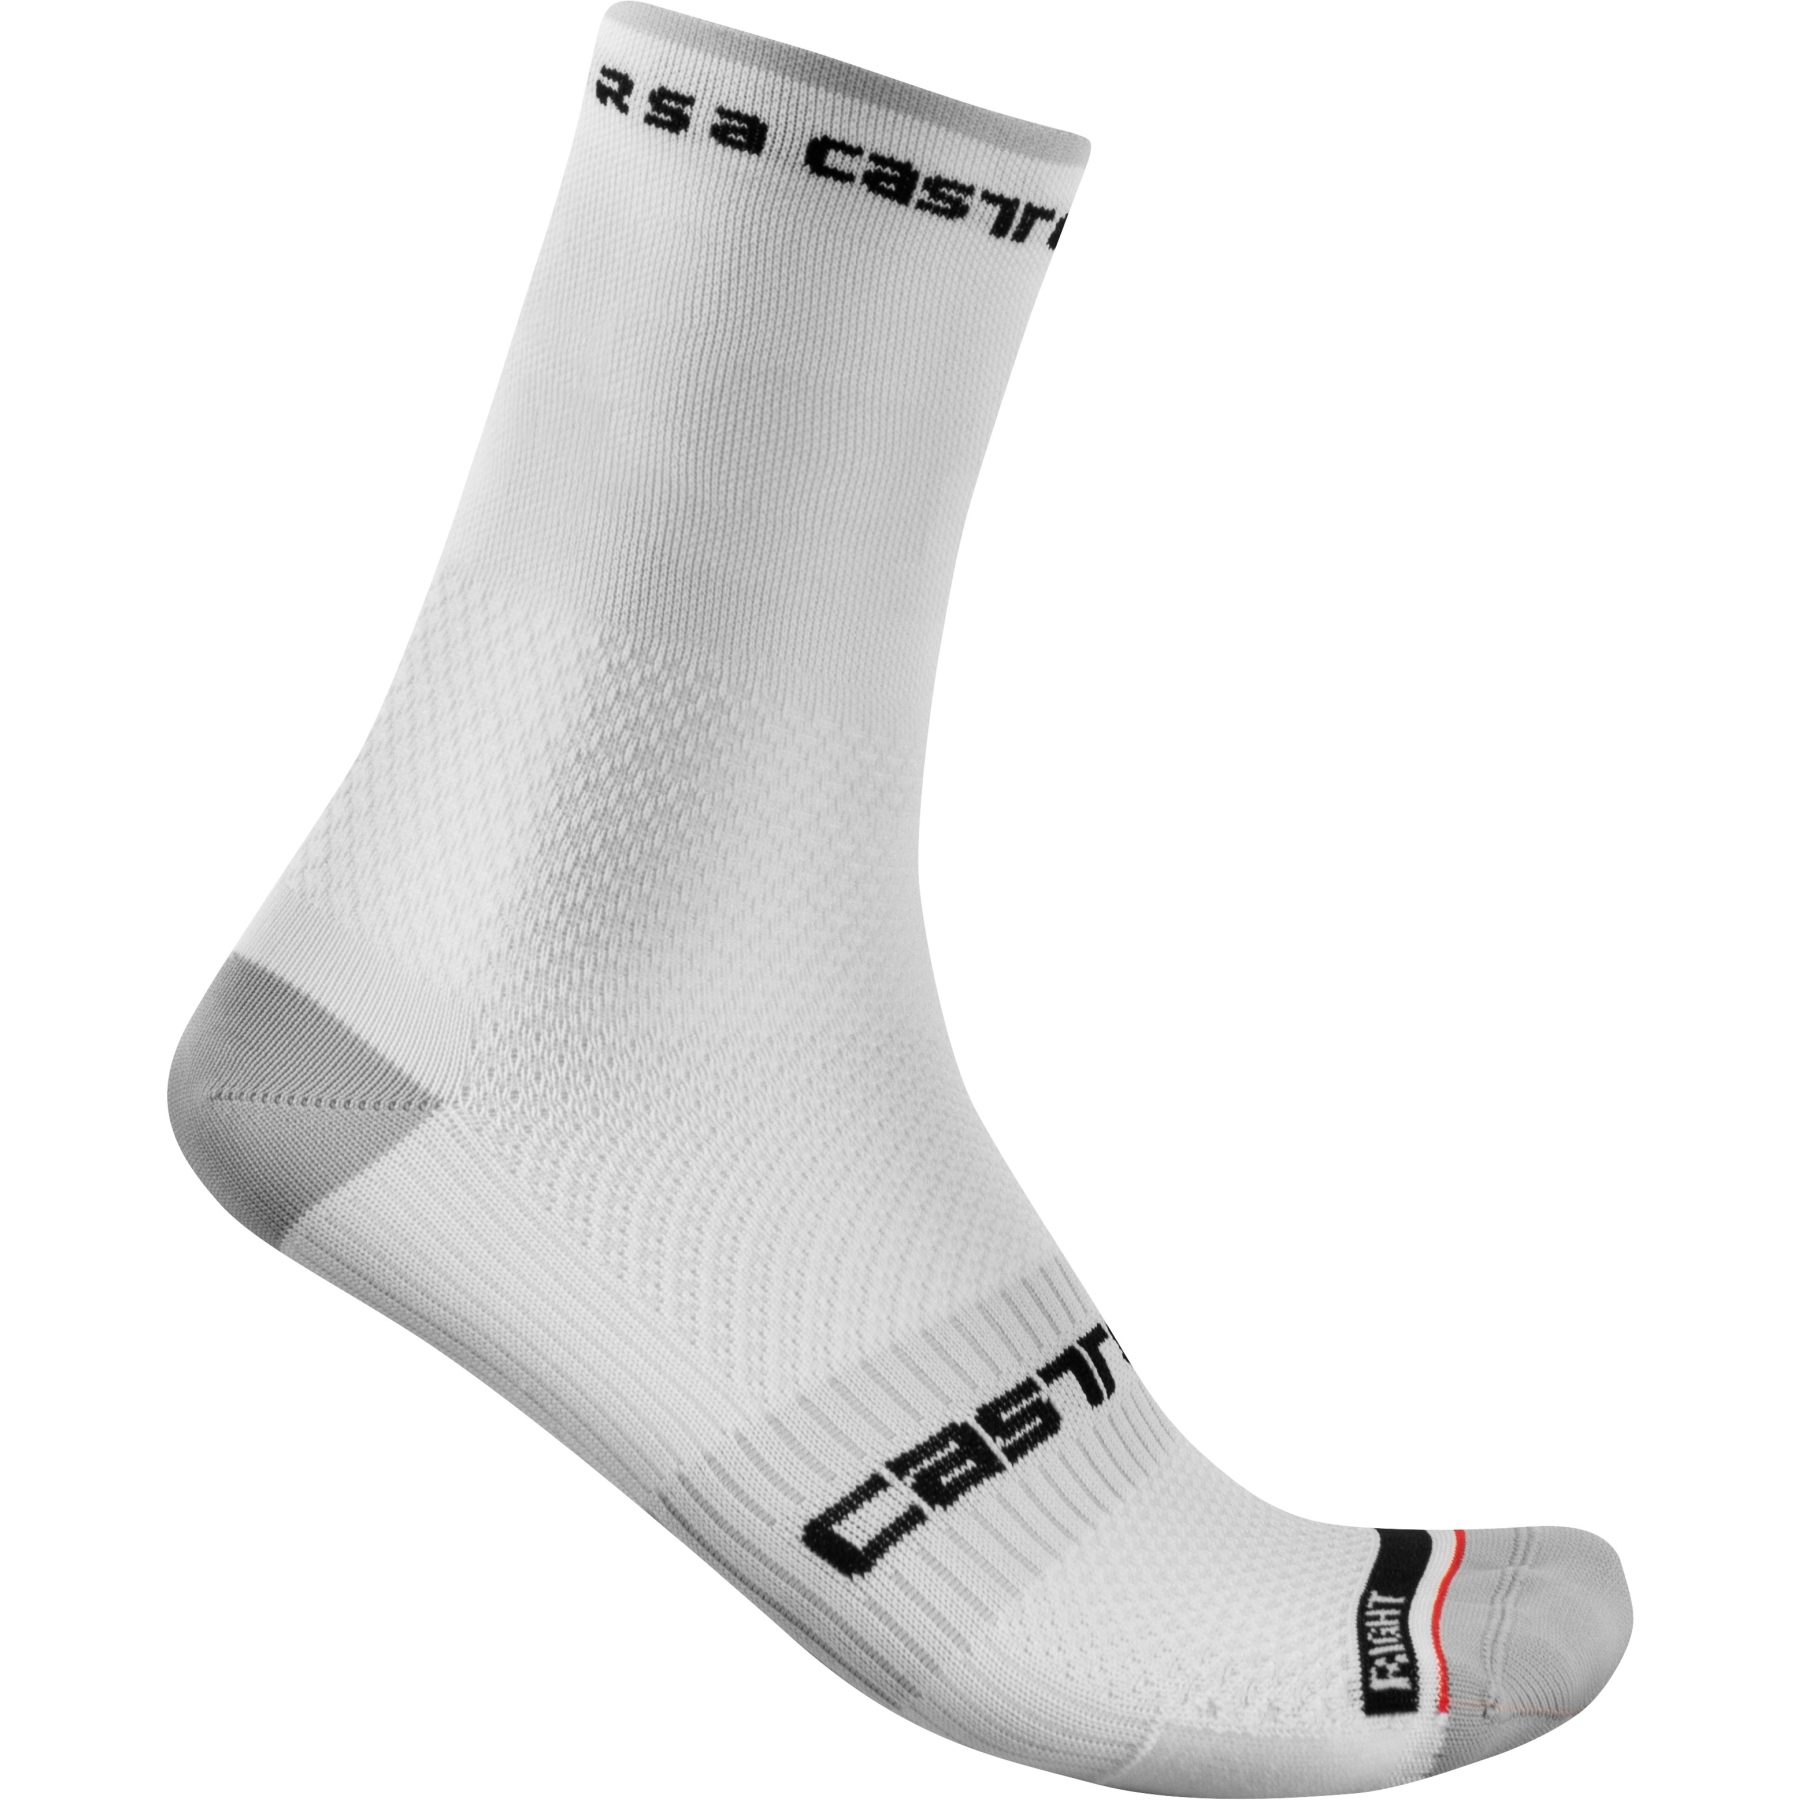 Picture of Castelli Rosso Corsa Pro 15 Socks - white 001